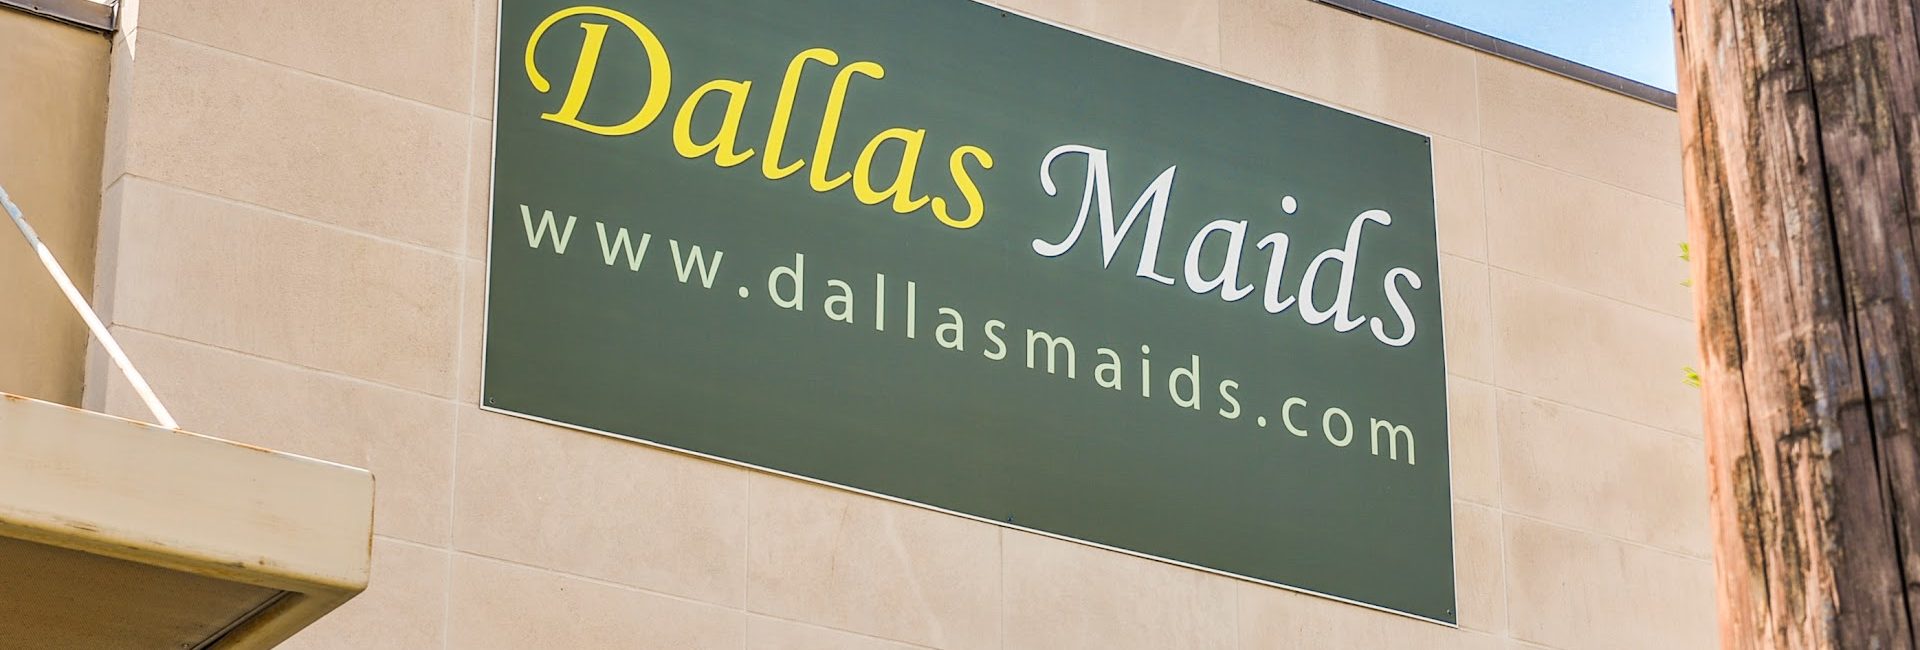 Dallas Maids 1